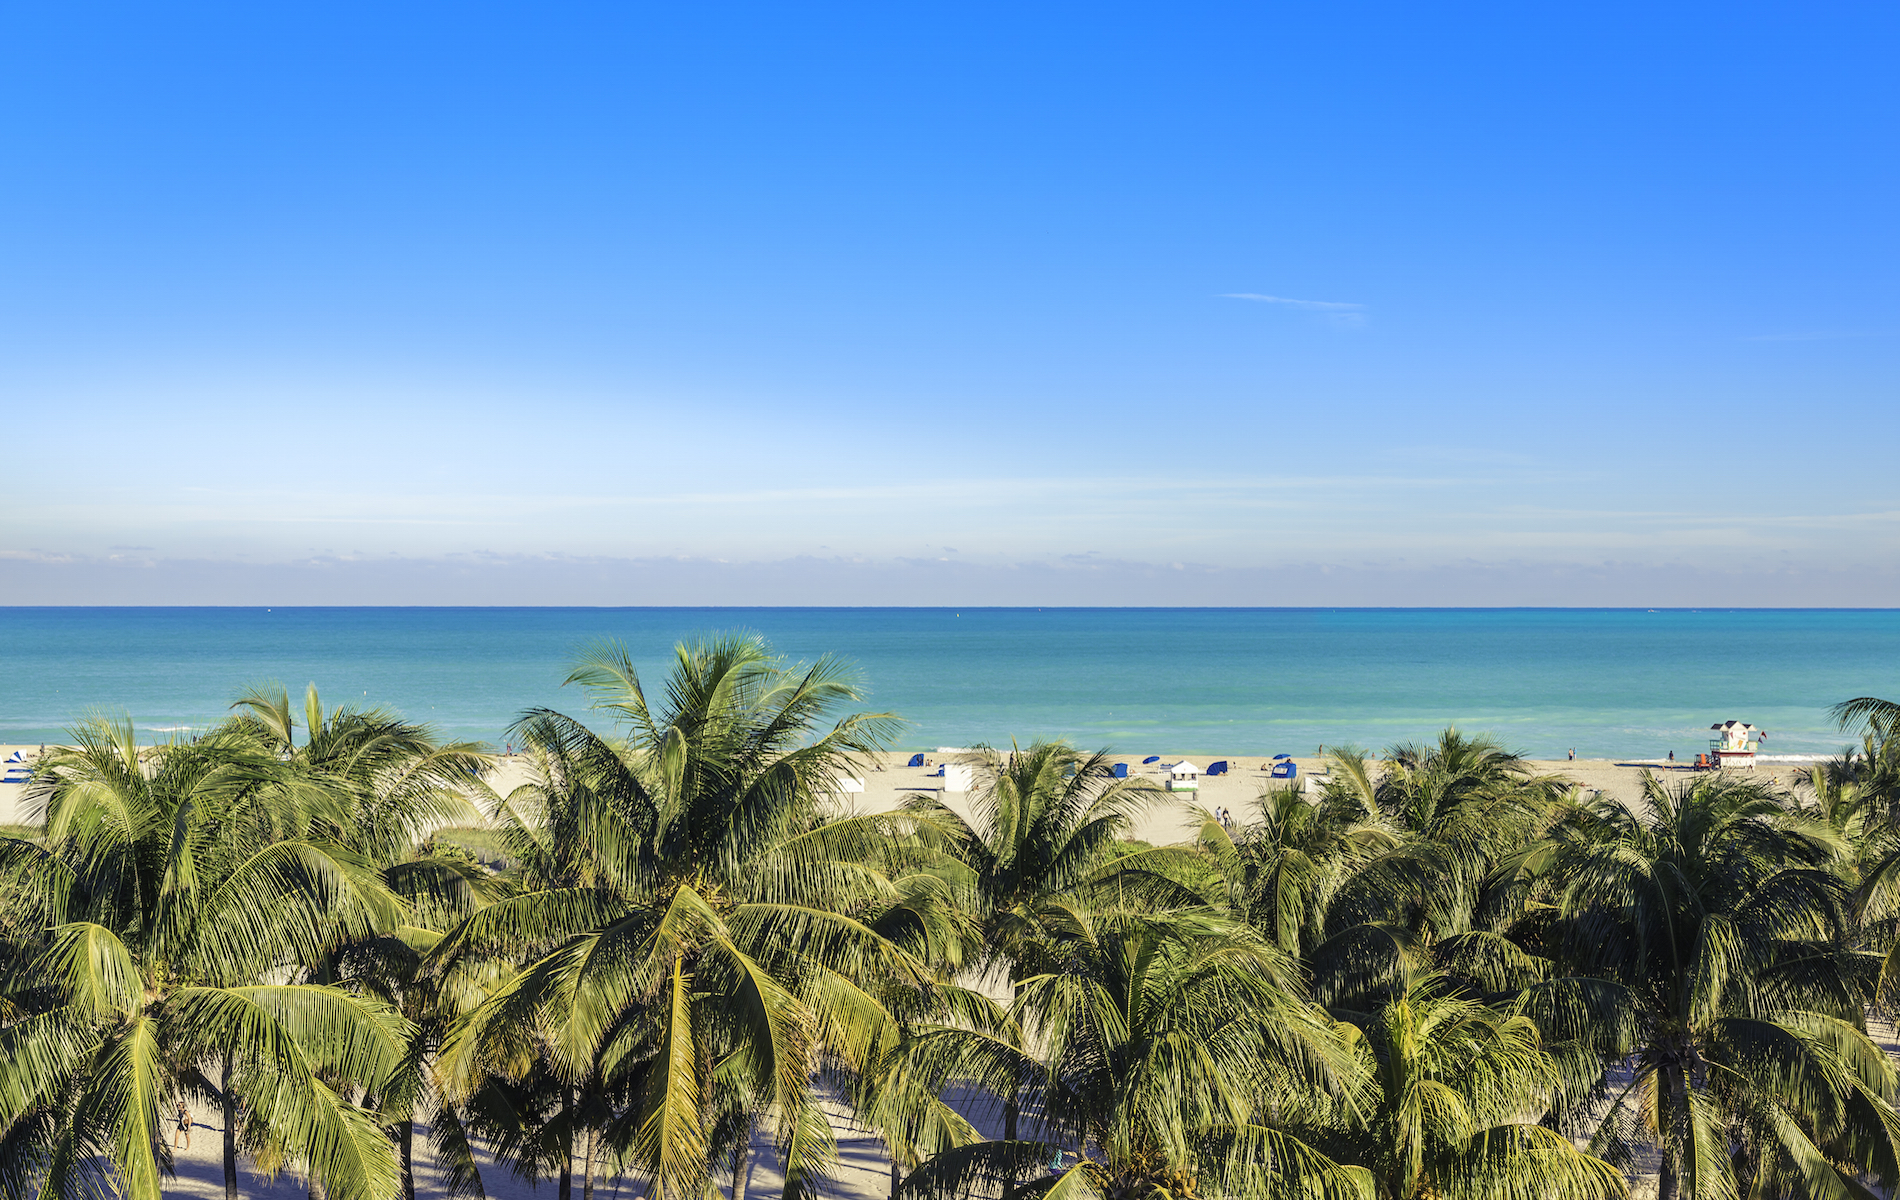 Public beach behind the palm trees in Miami Beach, Florida